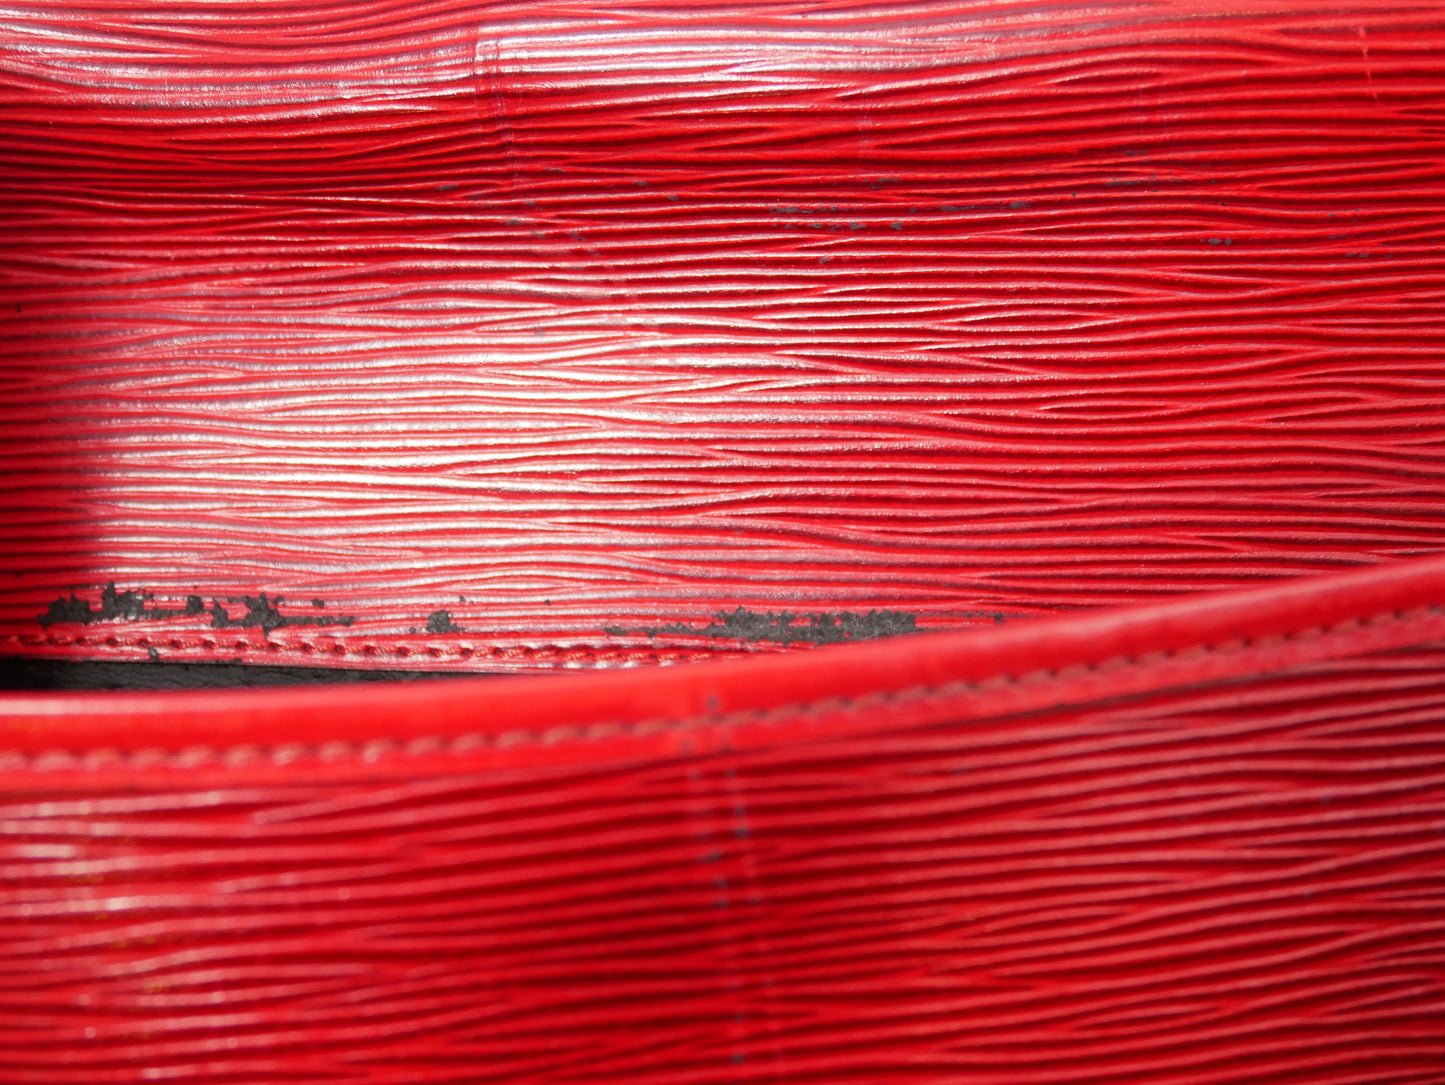 <tc>Grande pochette rouge Louis Vuitton</tc>